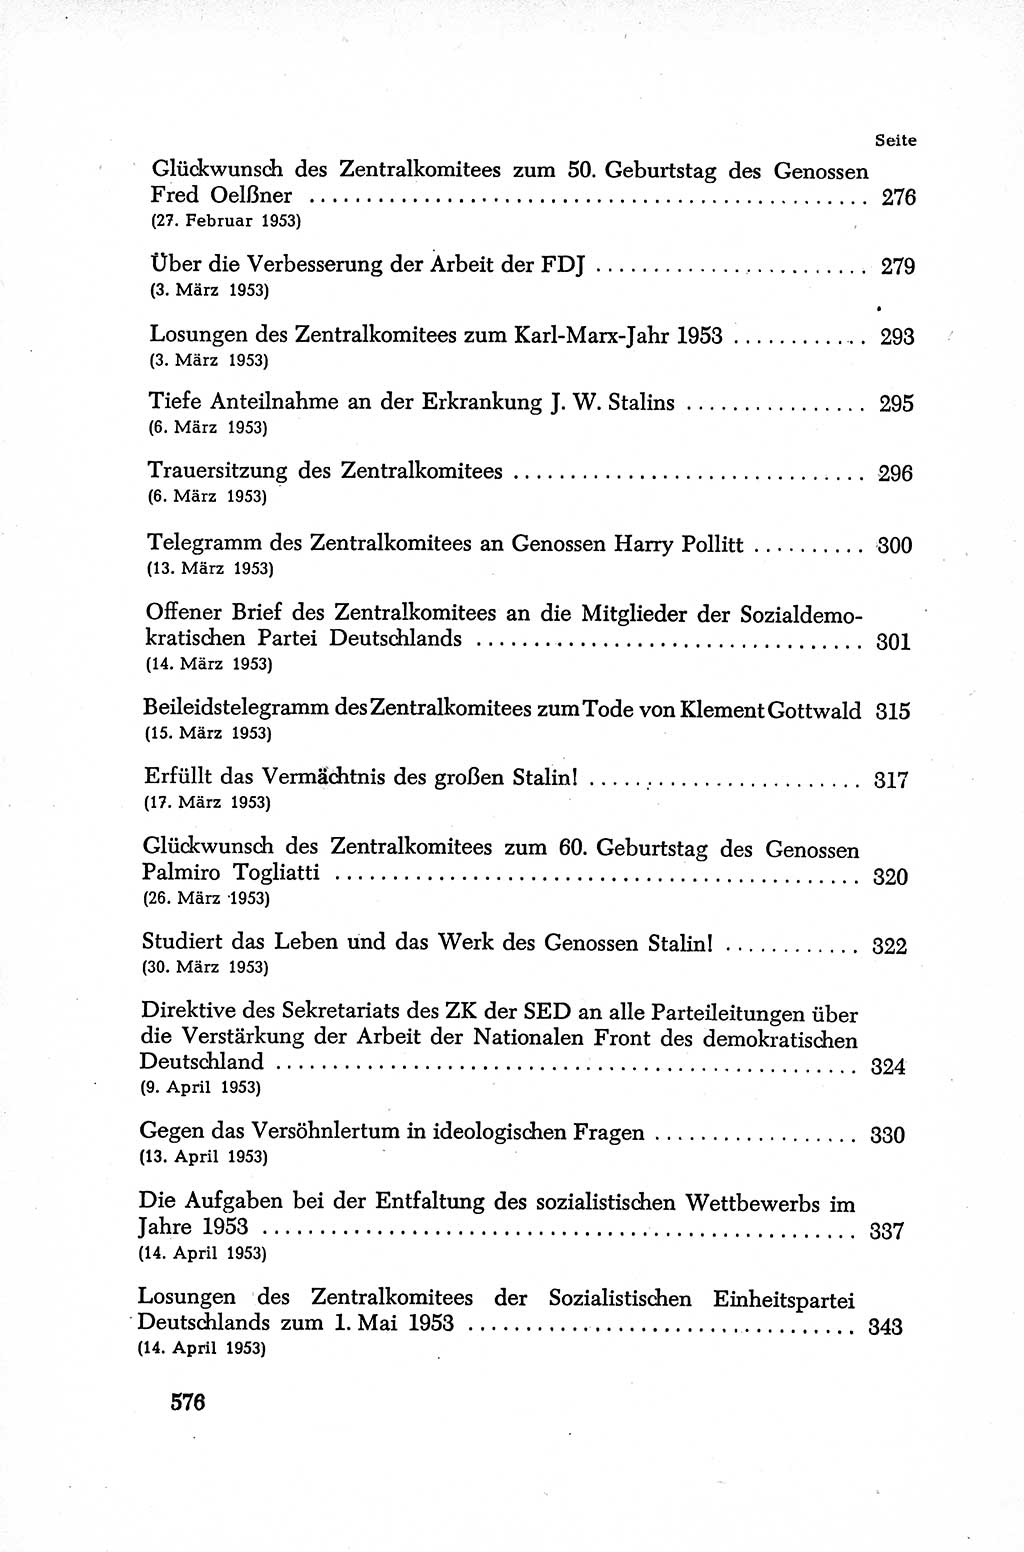 Dokumente der Sozialistischen Einheitspartei Deutschlands (SED) [Deutsche Demokratische Republik (DDR)] 1952-1953, Seite 576 (Dok. SED DDR 1952-1953, S. 576)